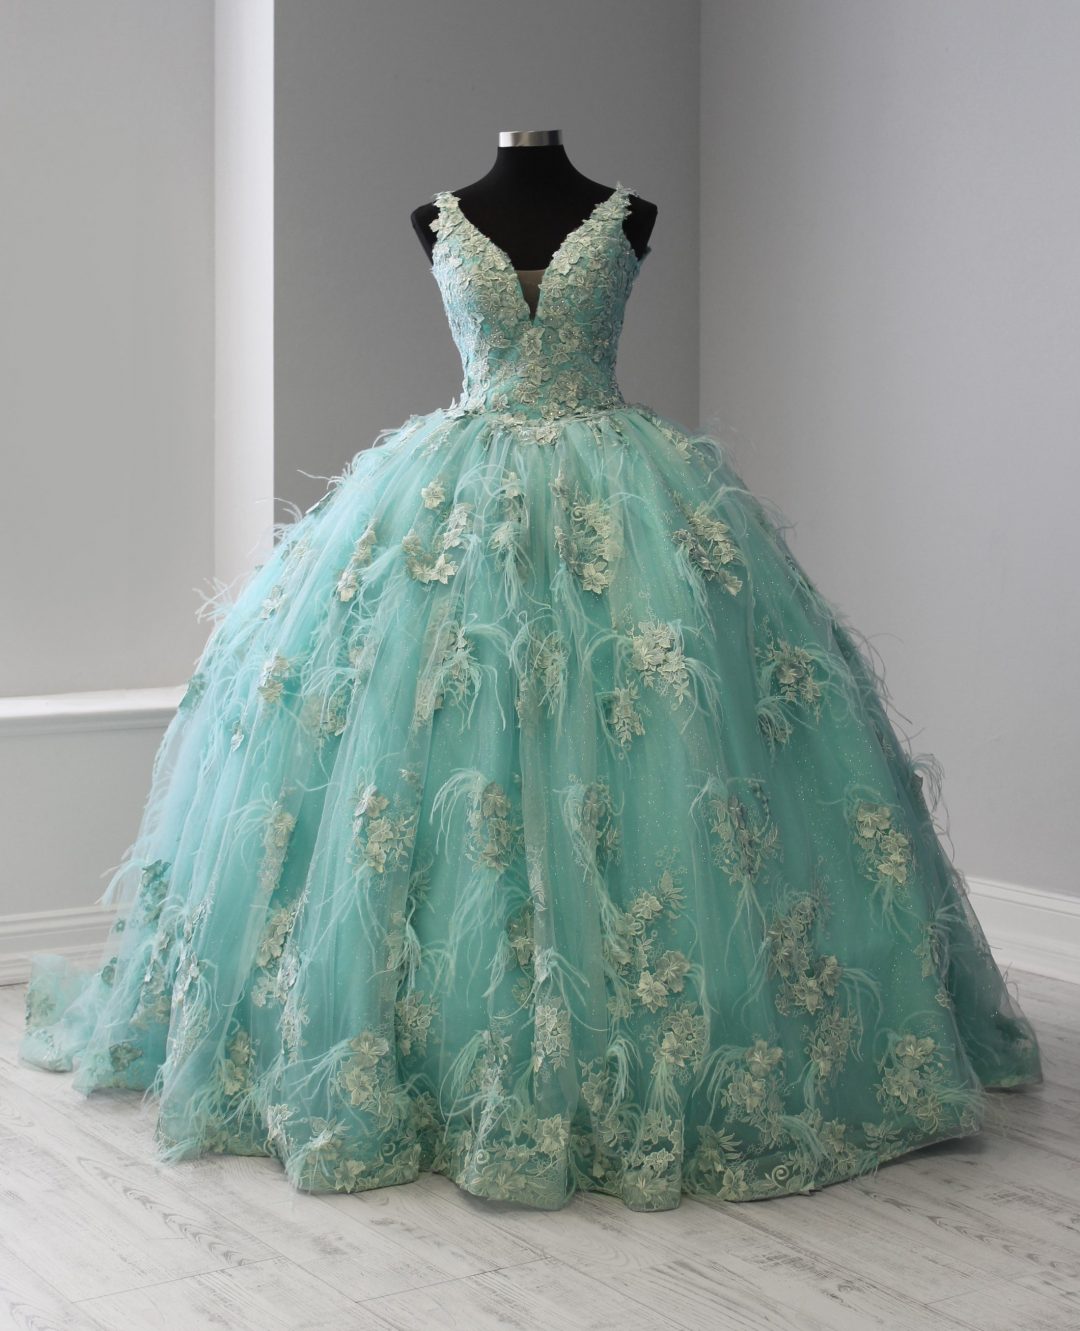 3D Floral Lace Applique Quinceanera Dress - Toledoz Boutique